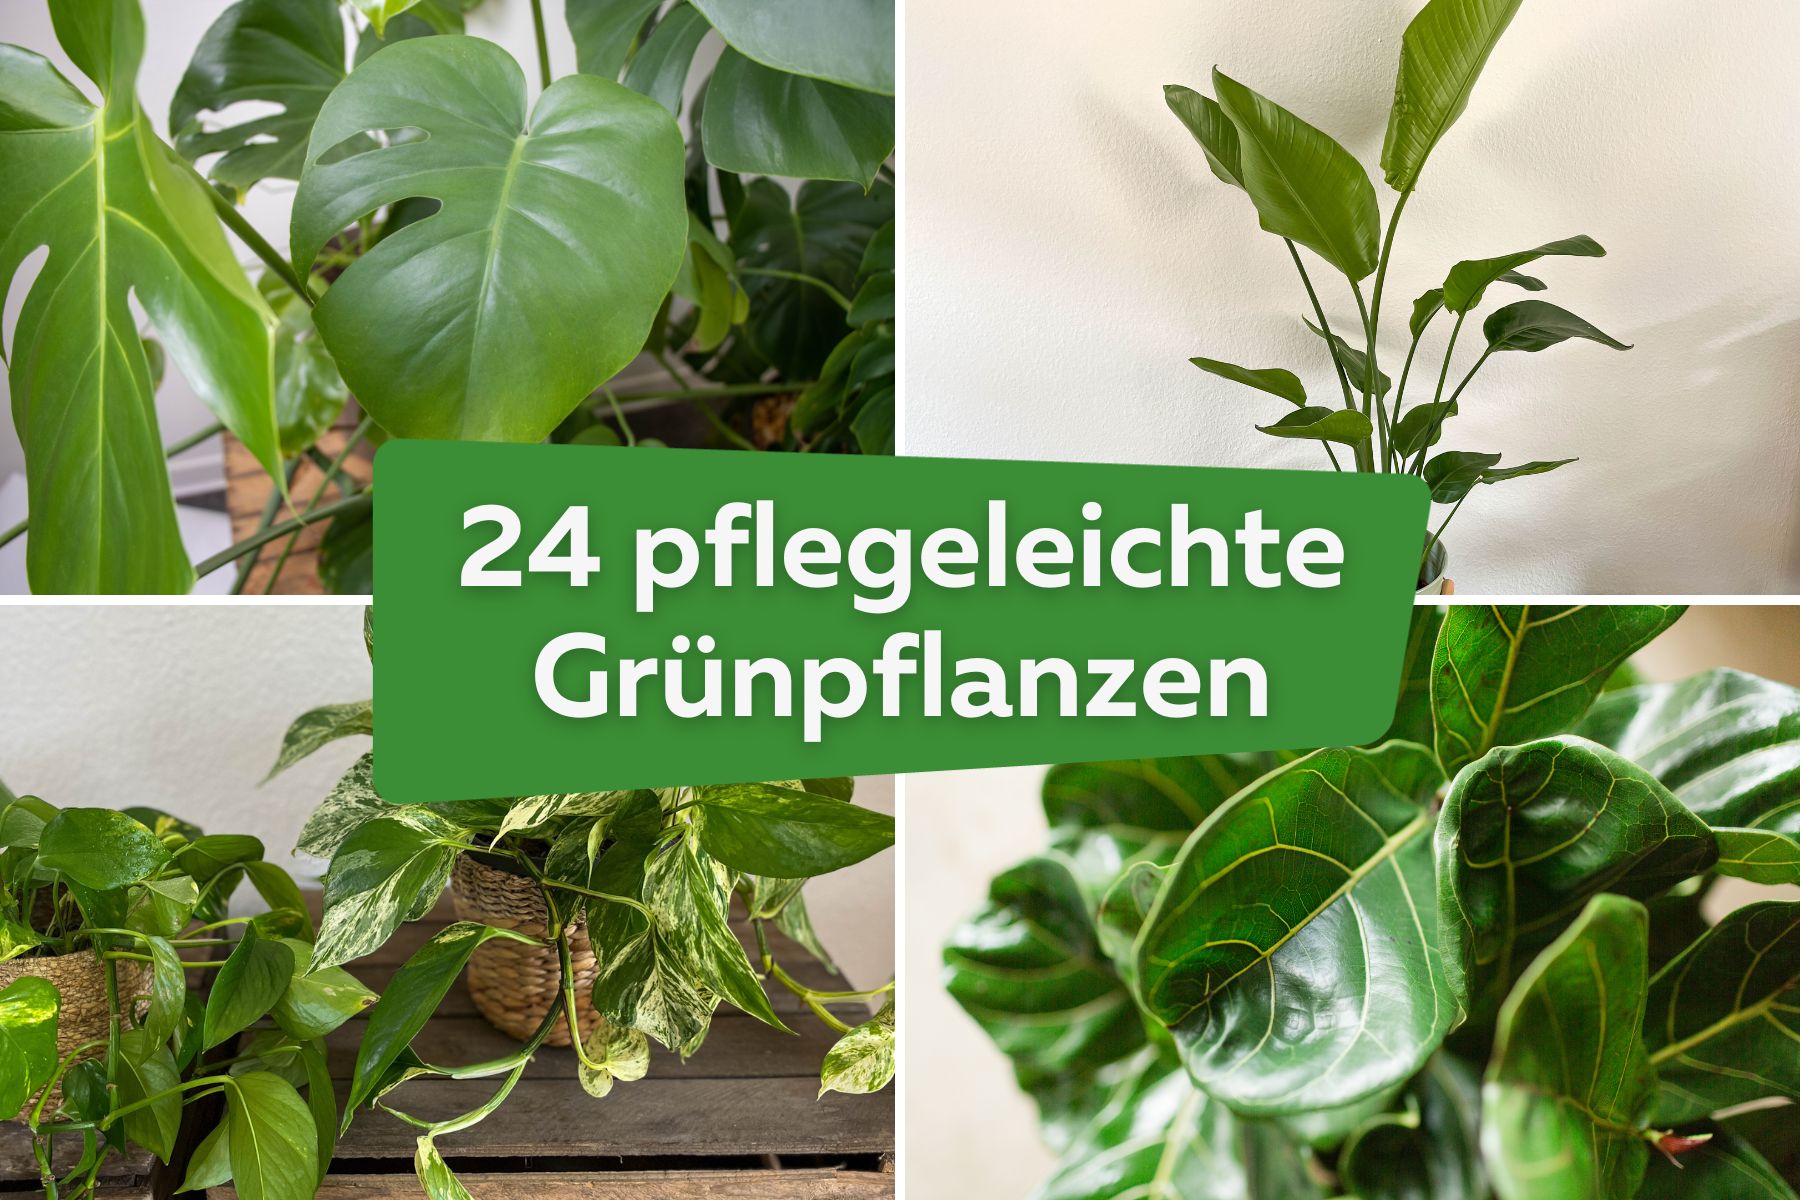 24 pflegeleichte Grünpflanzen für jede Wohnung | Monstera, Strelitzie, Geigenfeige und Efeutute